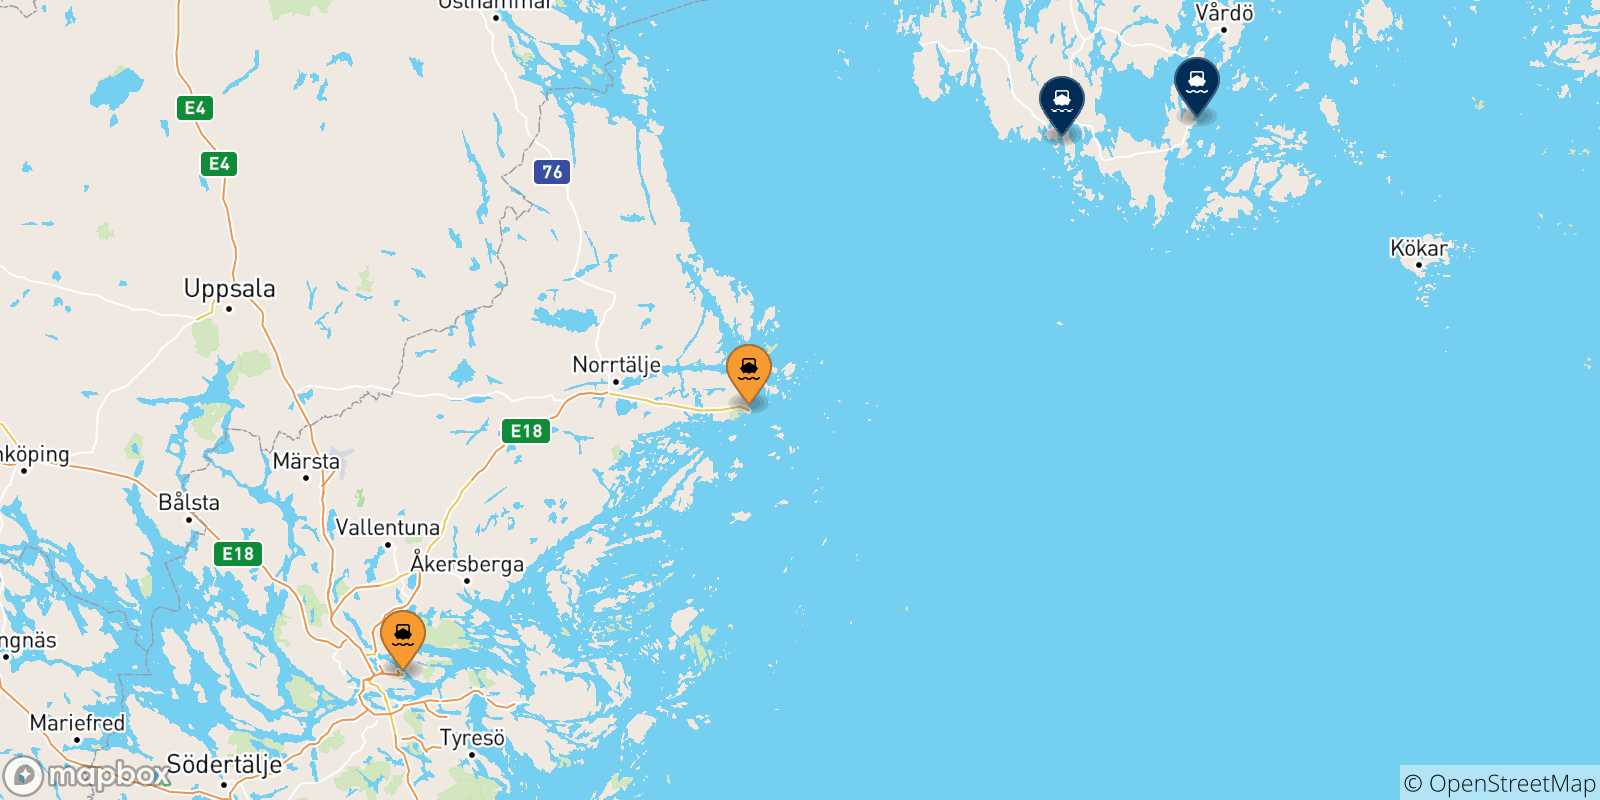 Mappa delle possibili rotte tra la Svezia e le Isole Aland